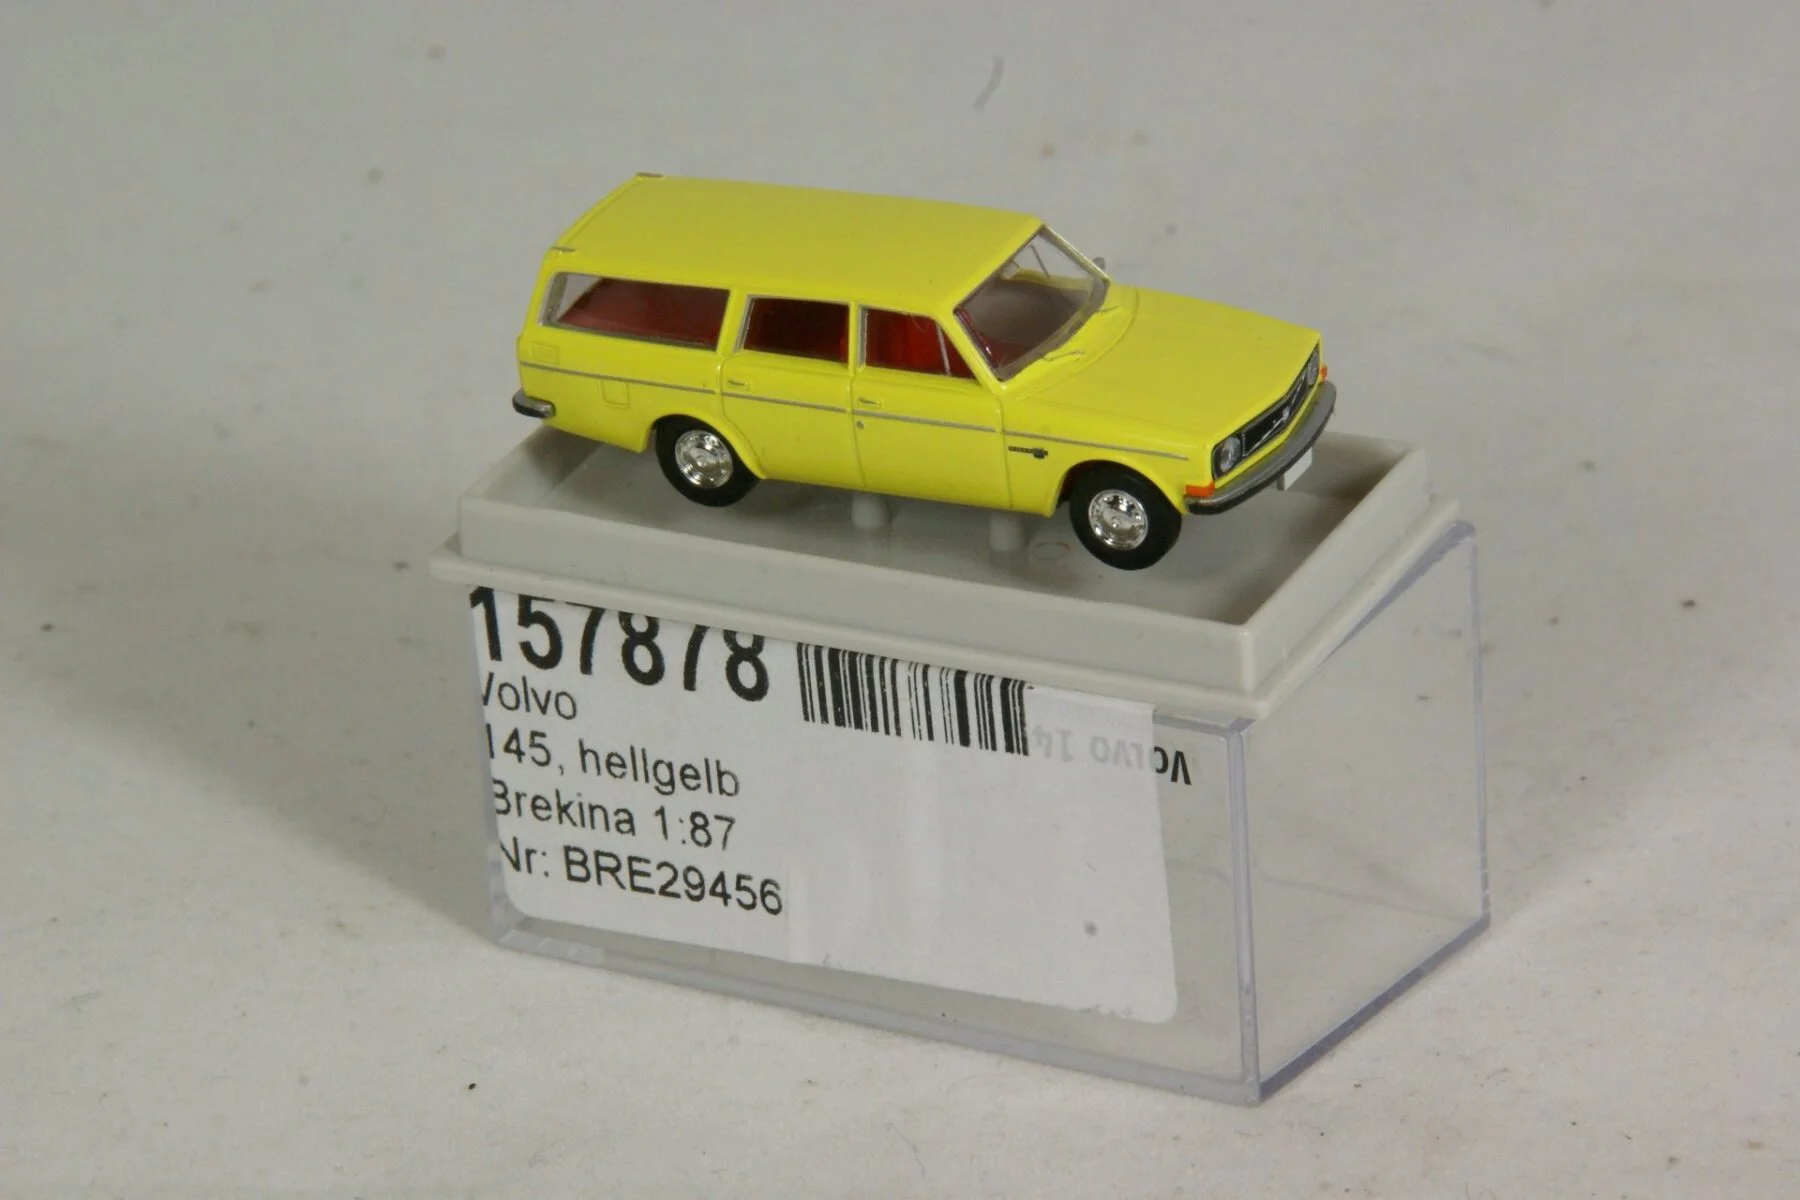 DSC00747 miniatuur Volvo 145 geel 1op87 Brekina 157878 MB